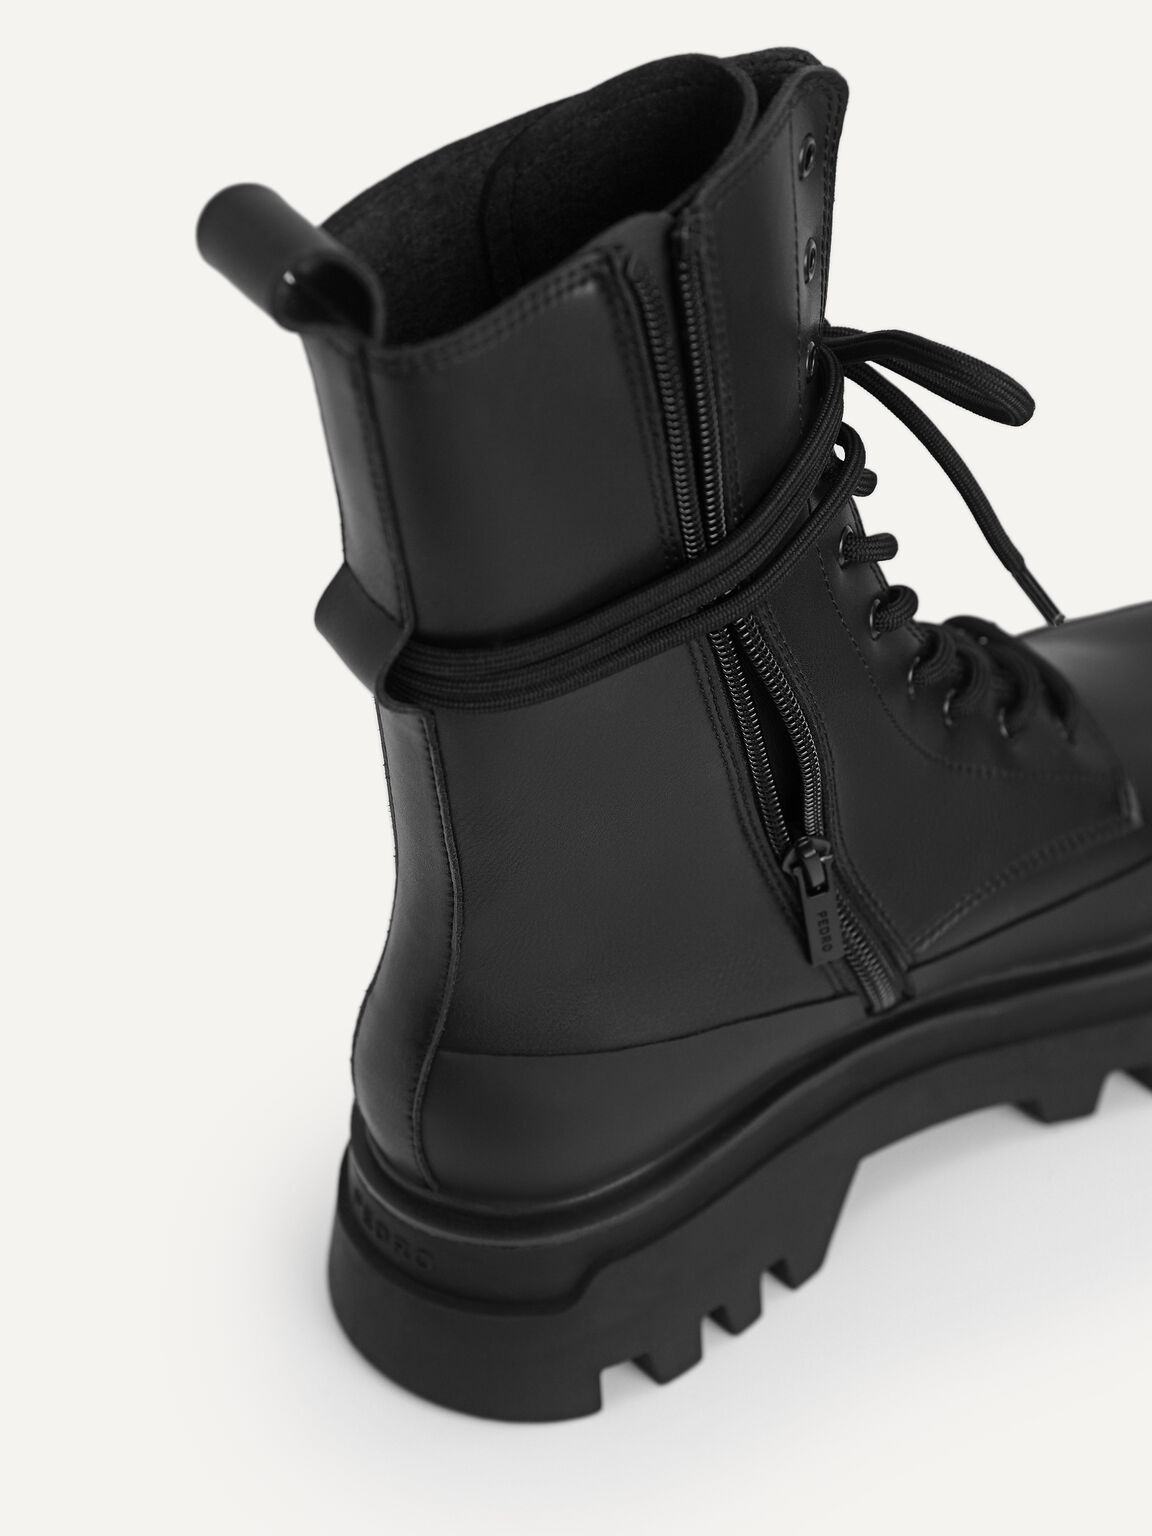 Platform Ankle Boots, Black